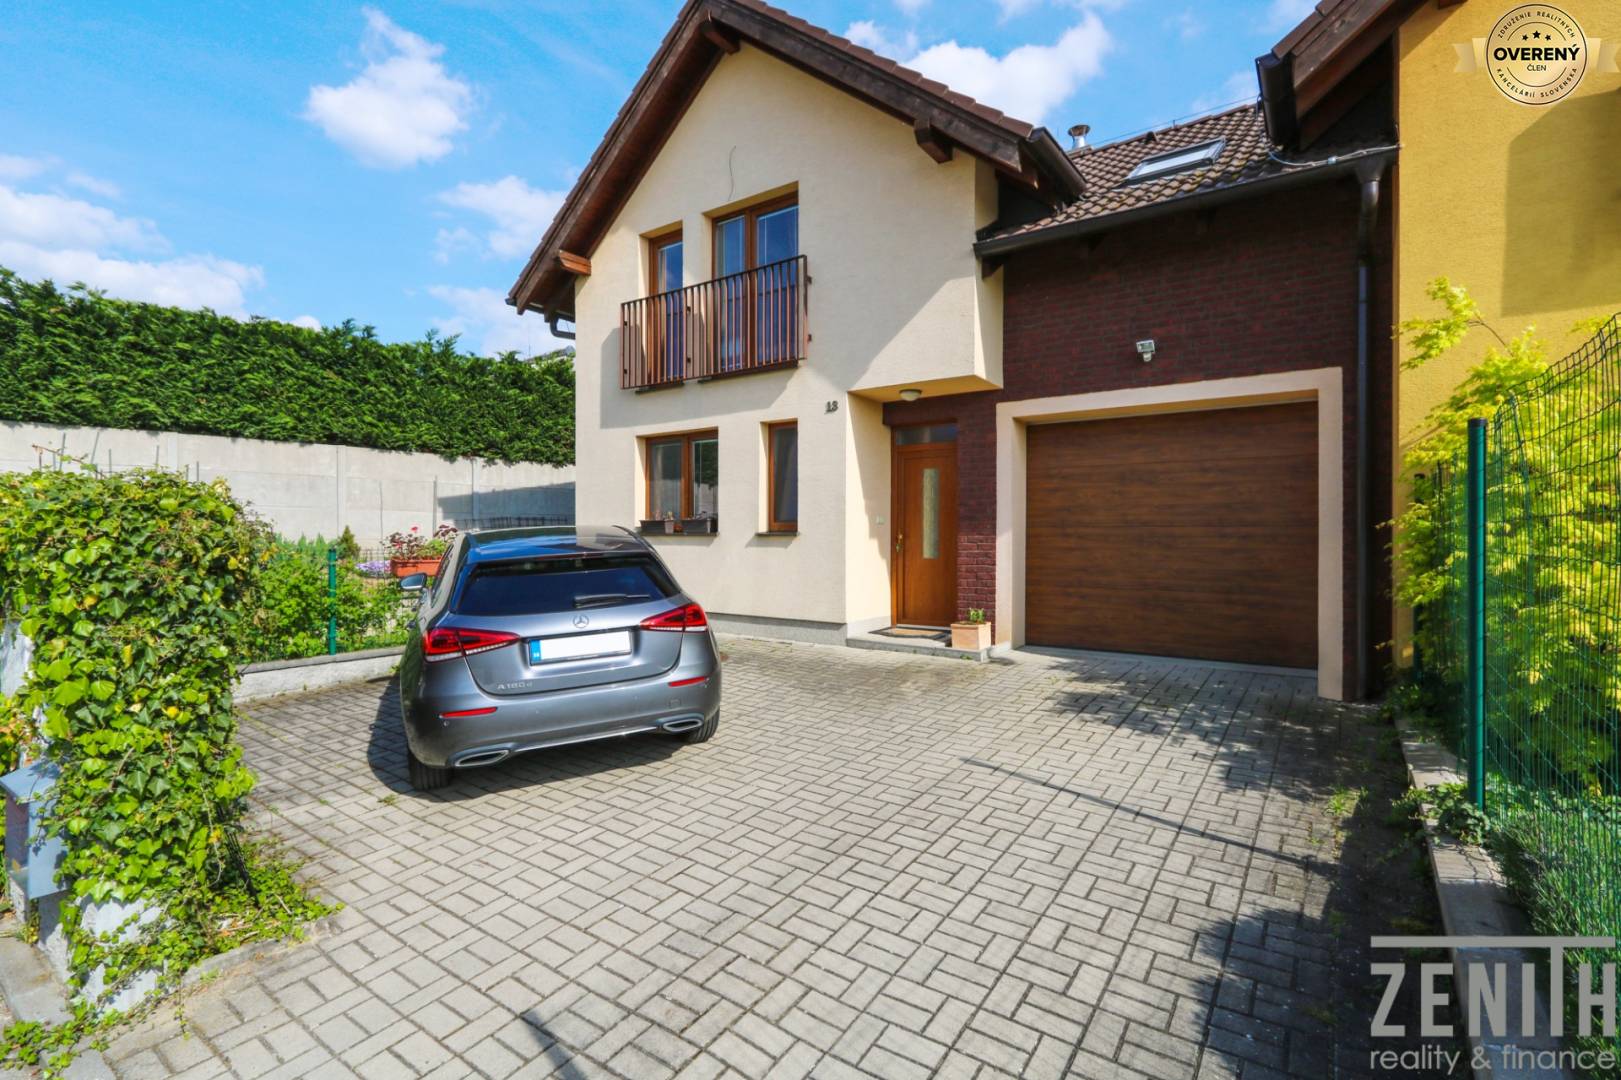 Einfamilienhaus, Lipová, zu verkaufen, Malacky, Slowakei